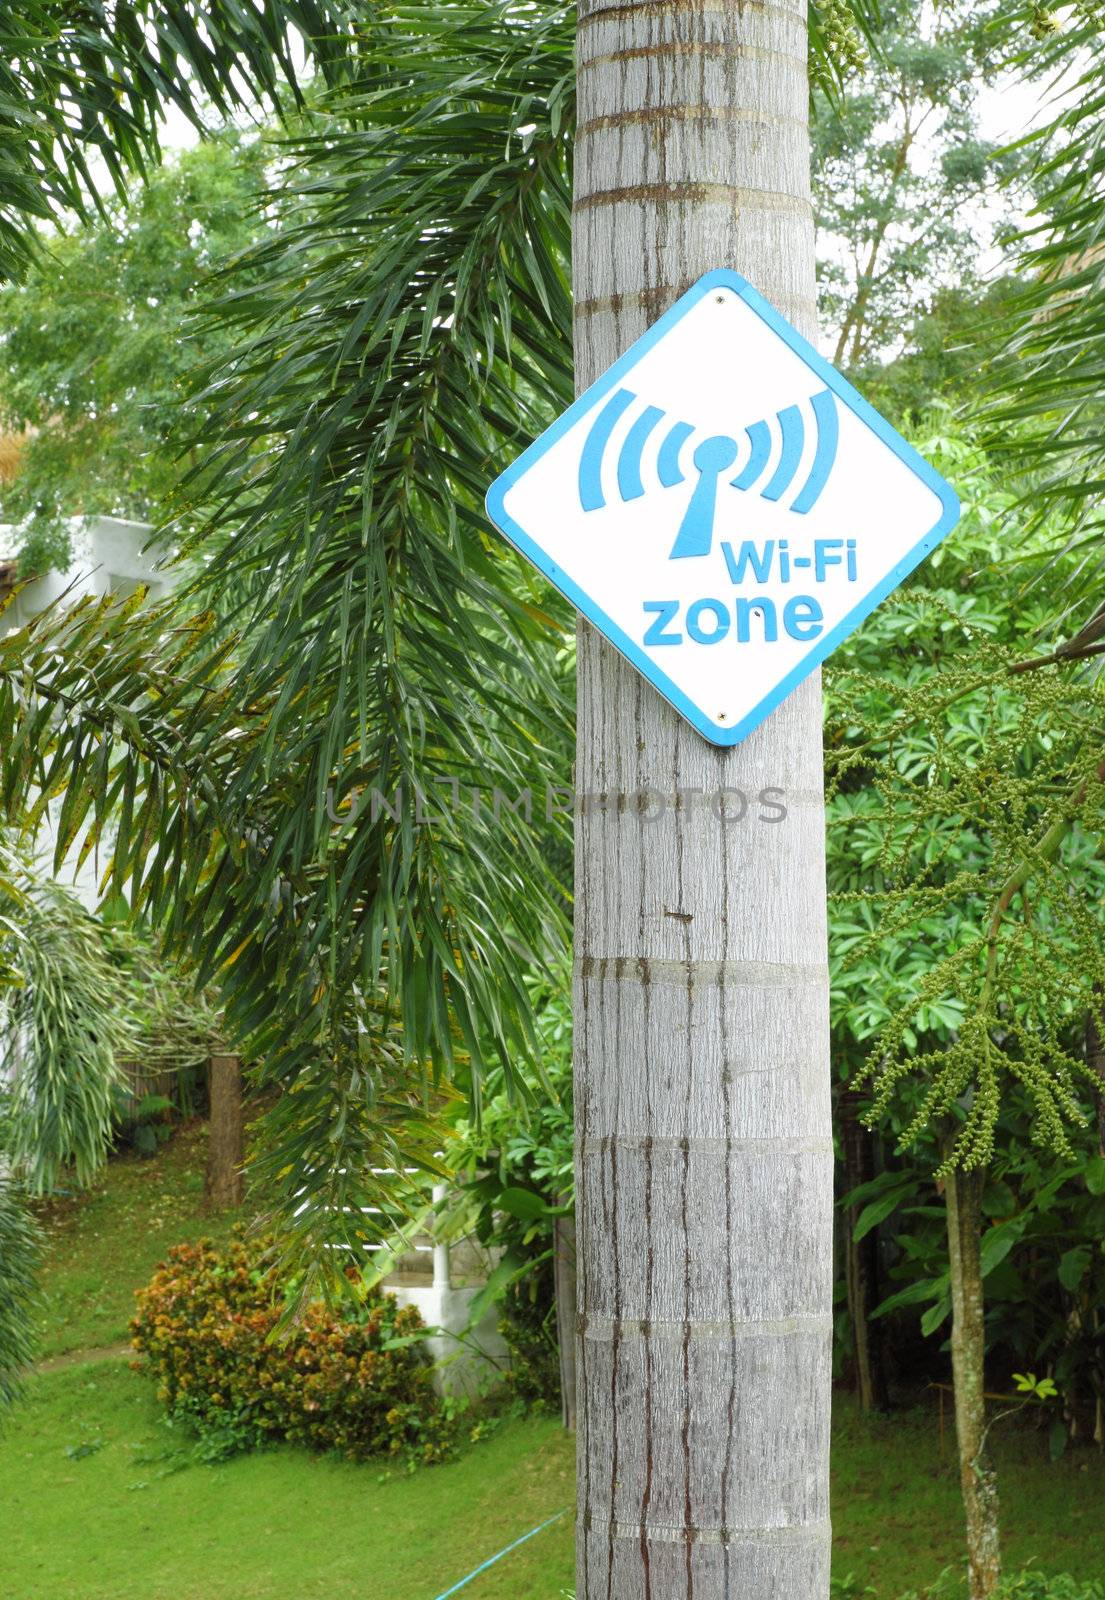 Wi-Fi zone sign on tree  by geargodz